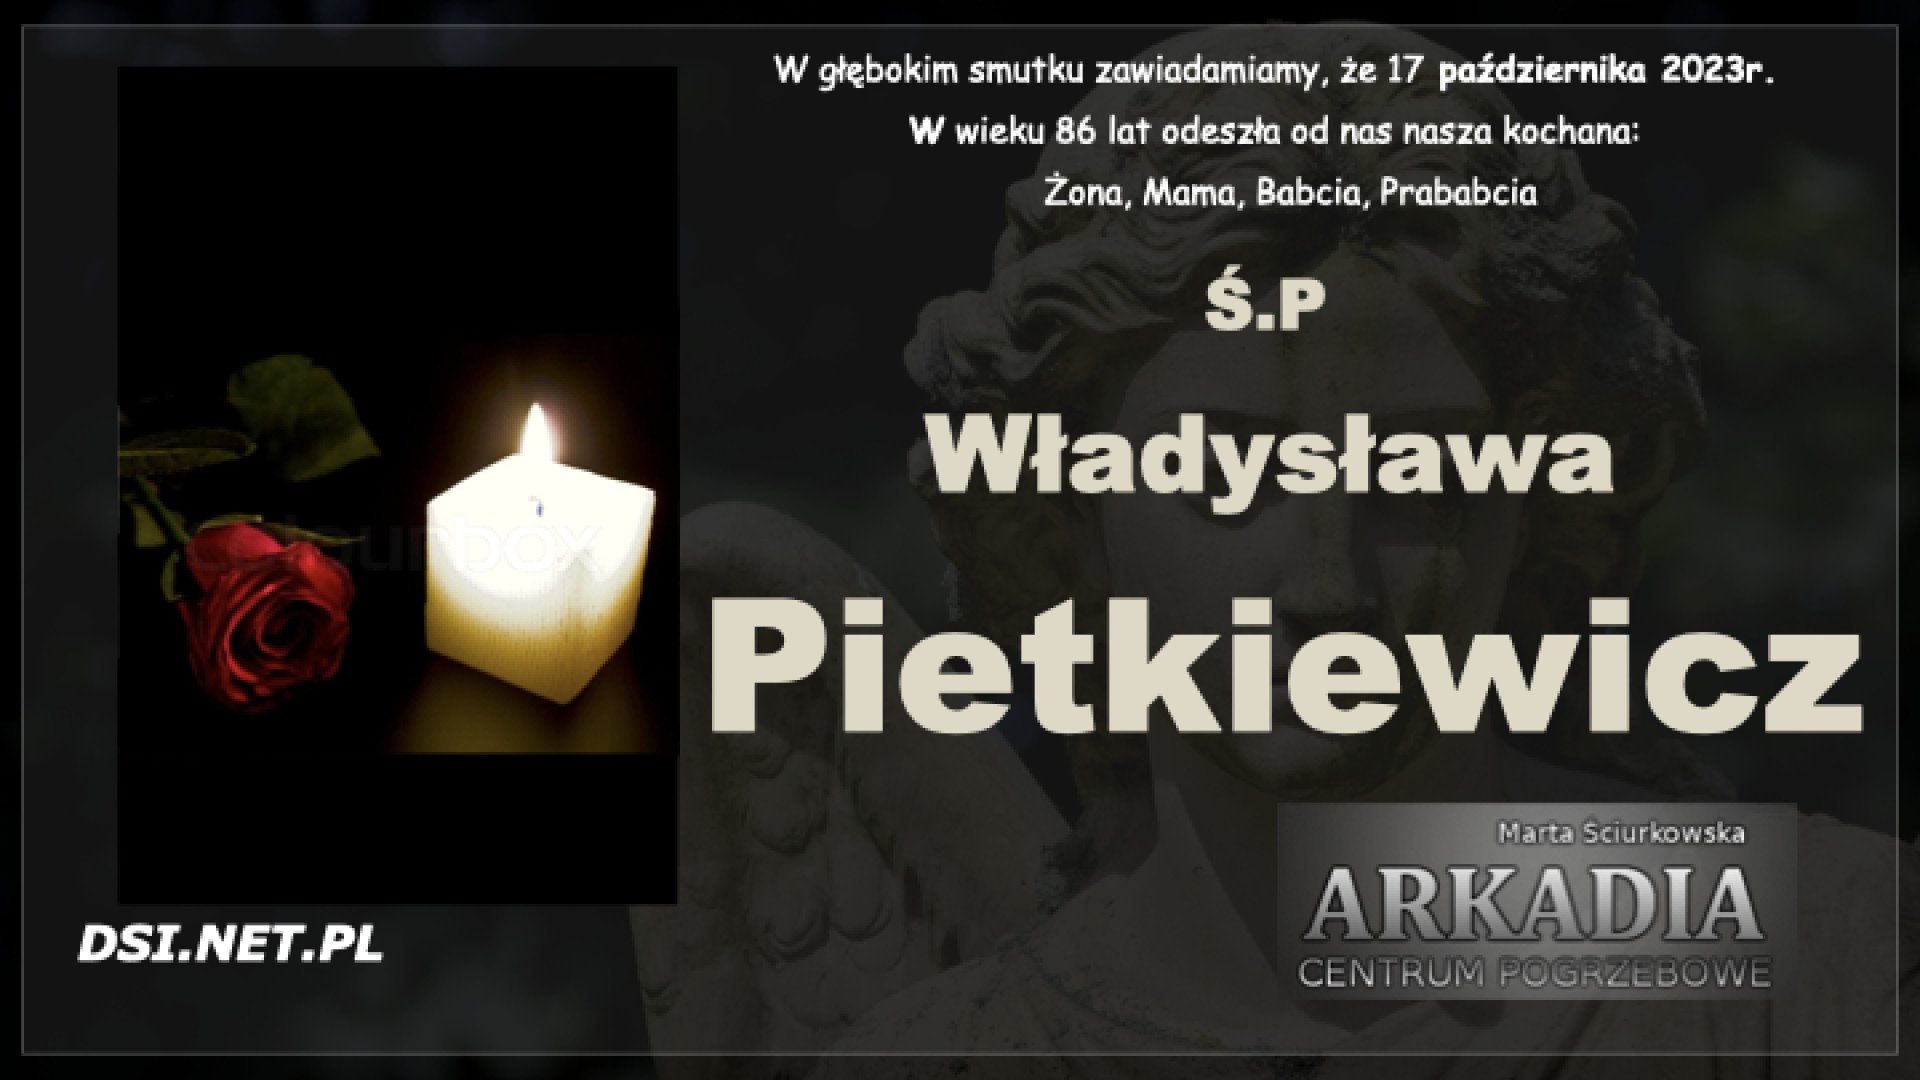 Ś.P. Władysława Pietkiewicz